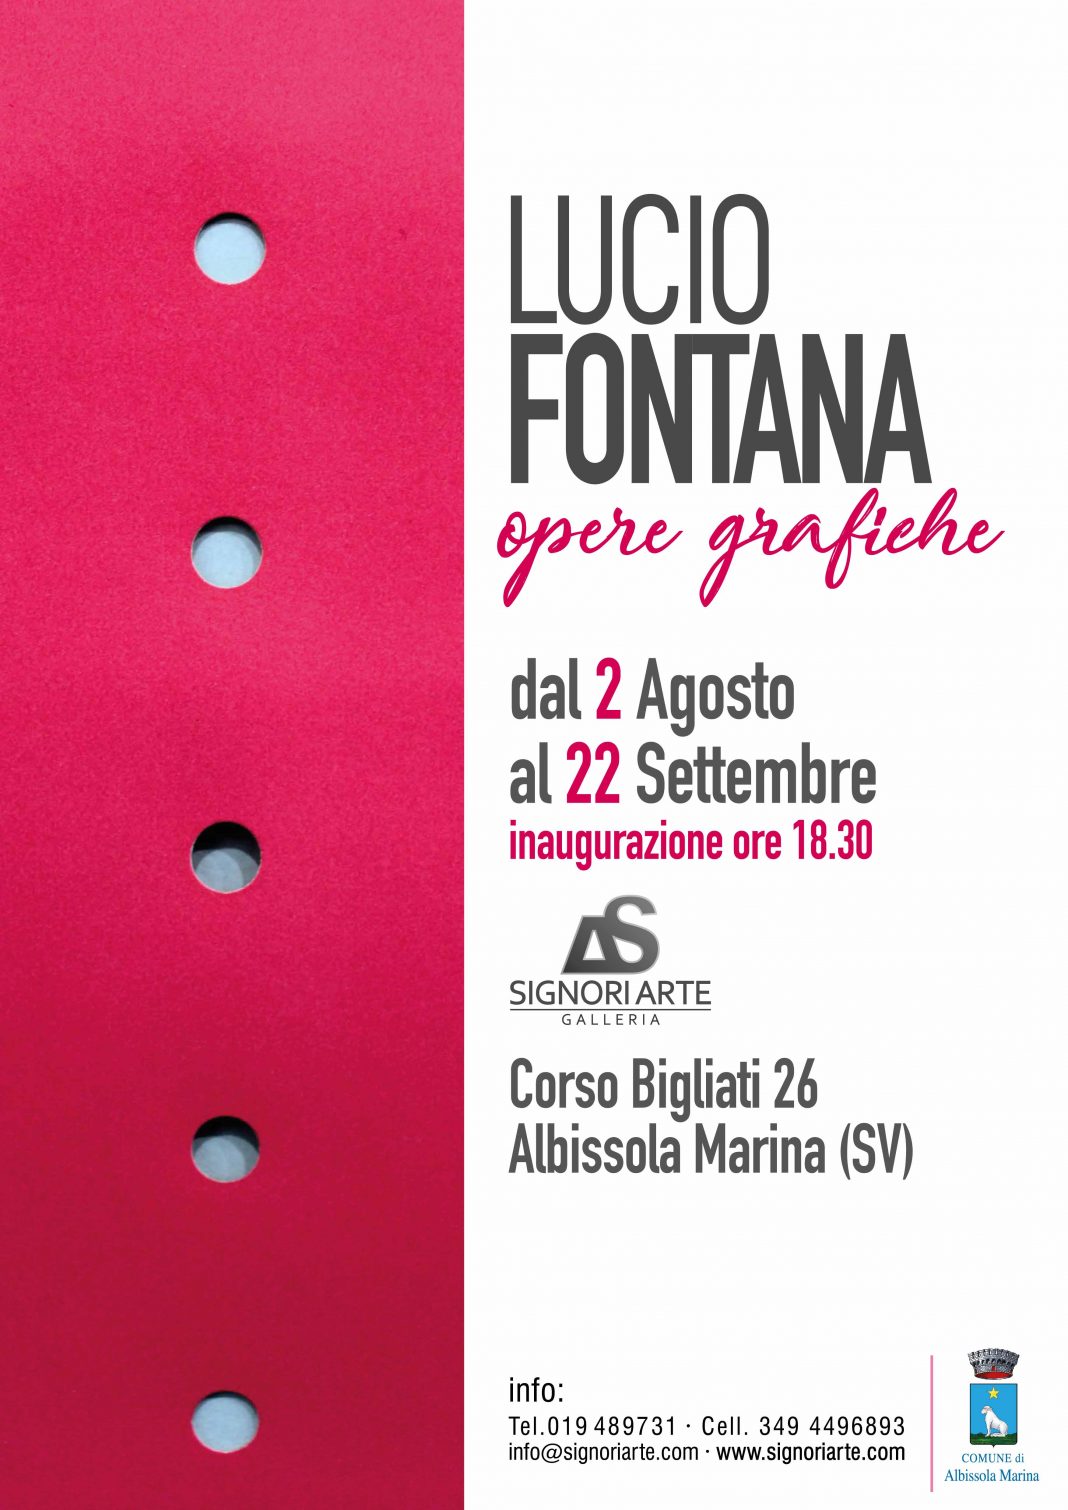 Lucio Fontana – Opere grafichehttps://www.exibart.com/repository/media/eventi/2018/07/lucio-fontana-8211-opere-grafiche-1068x1510.jpg